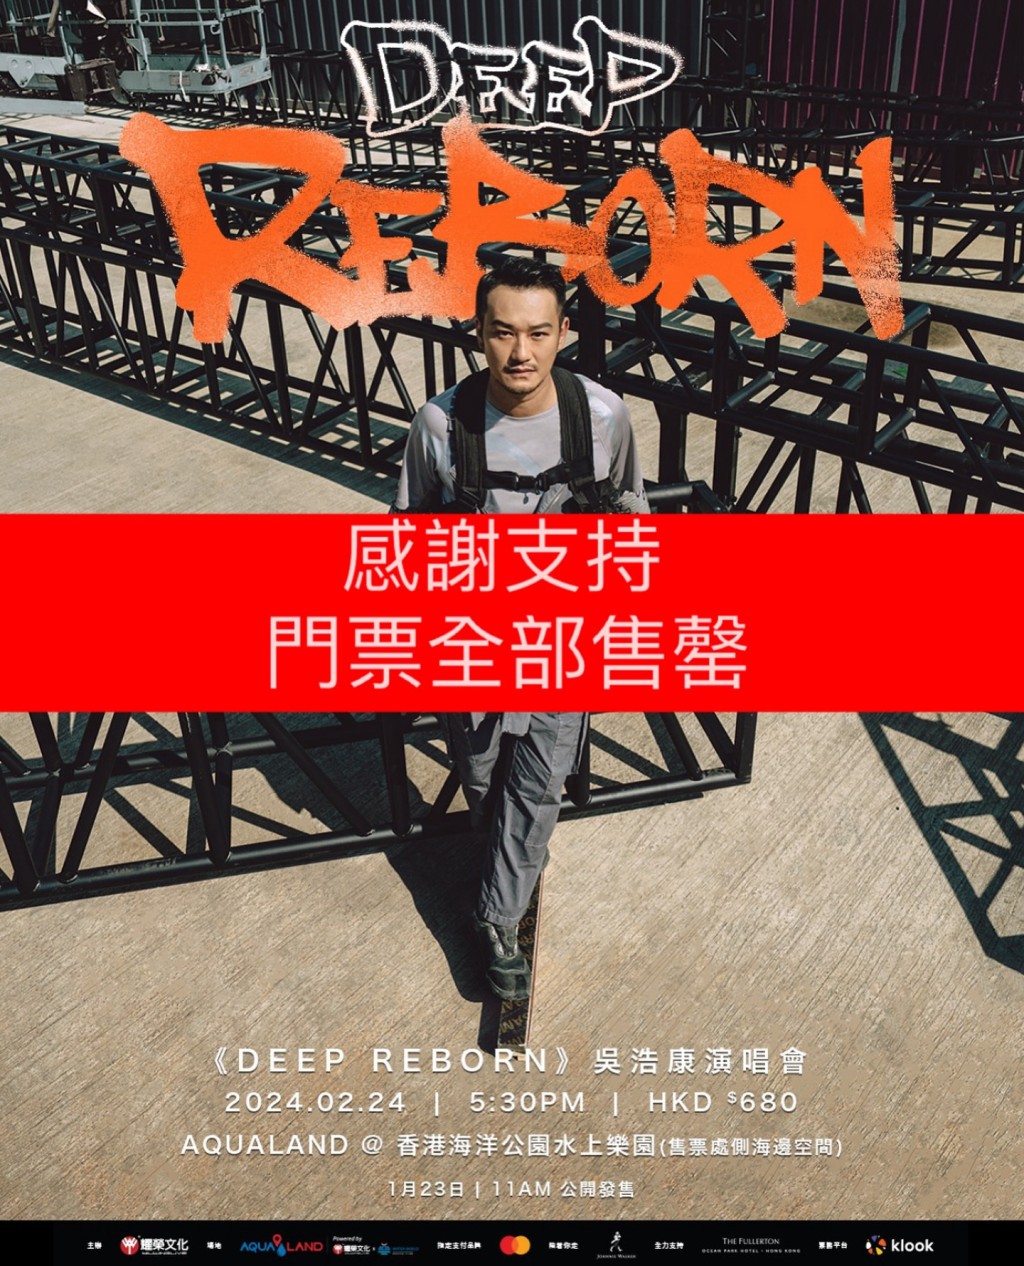 吴浩康乘势举行演唱会《Deep Reborn》，门票火速售罄。